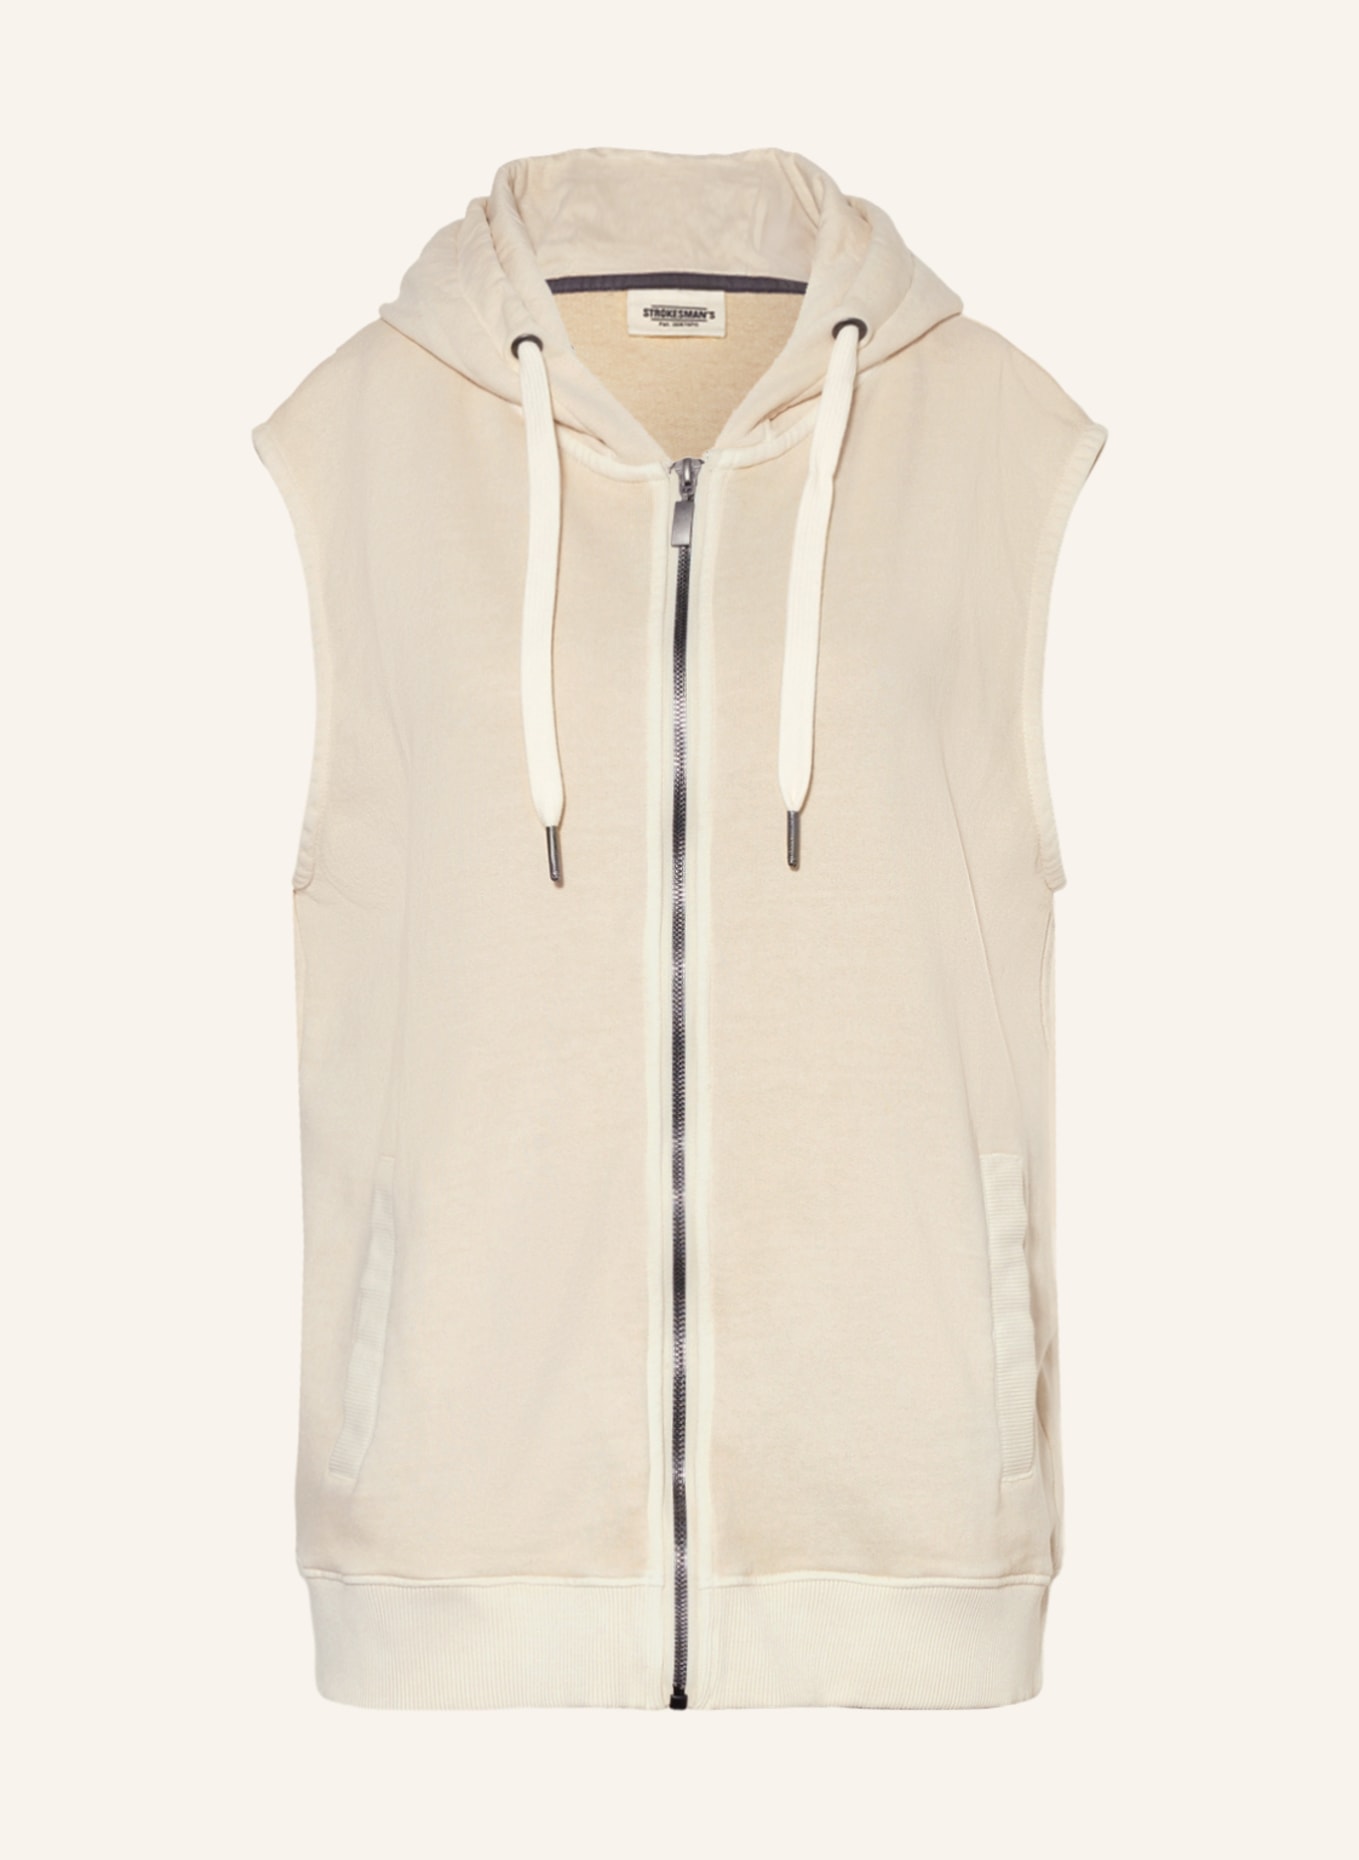 STROKESMAN'S Sweatshirt fabric vest, Color: BEIGE (Image 1)